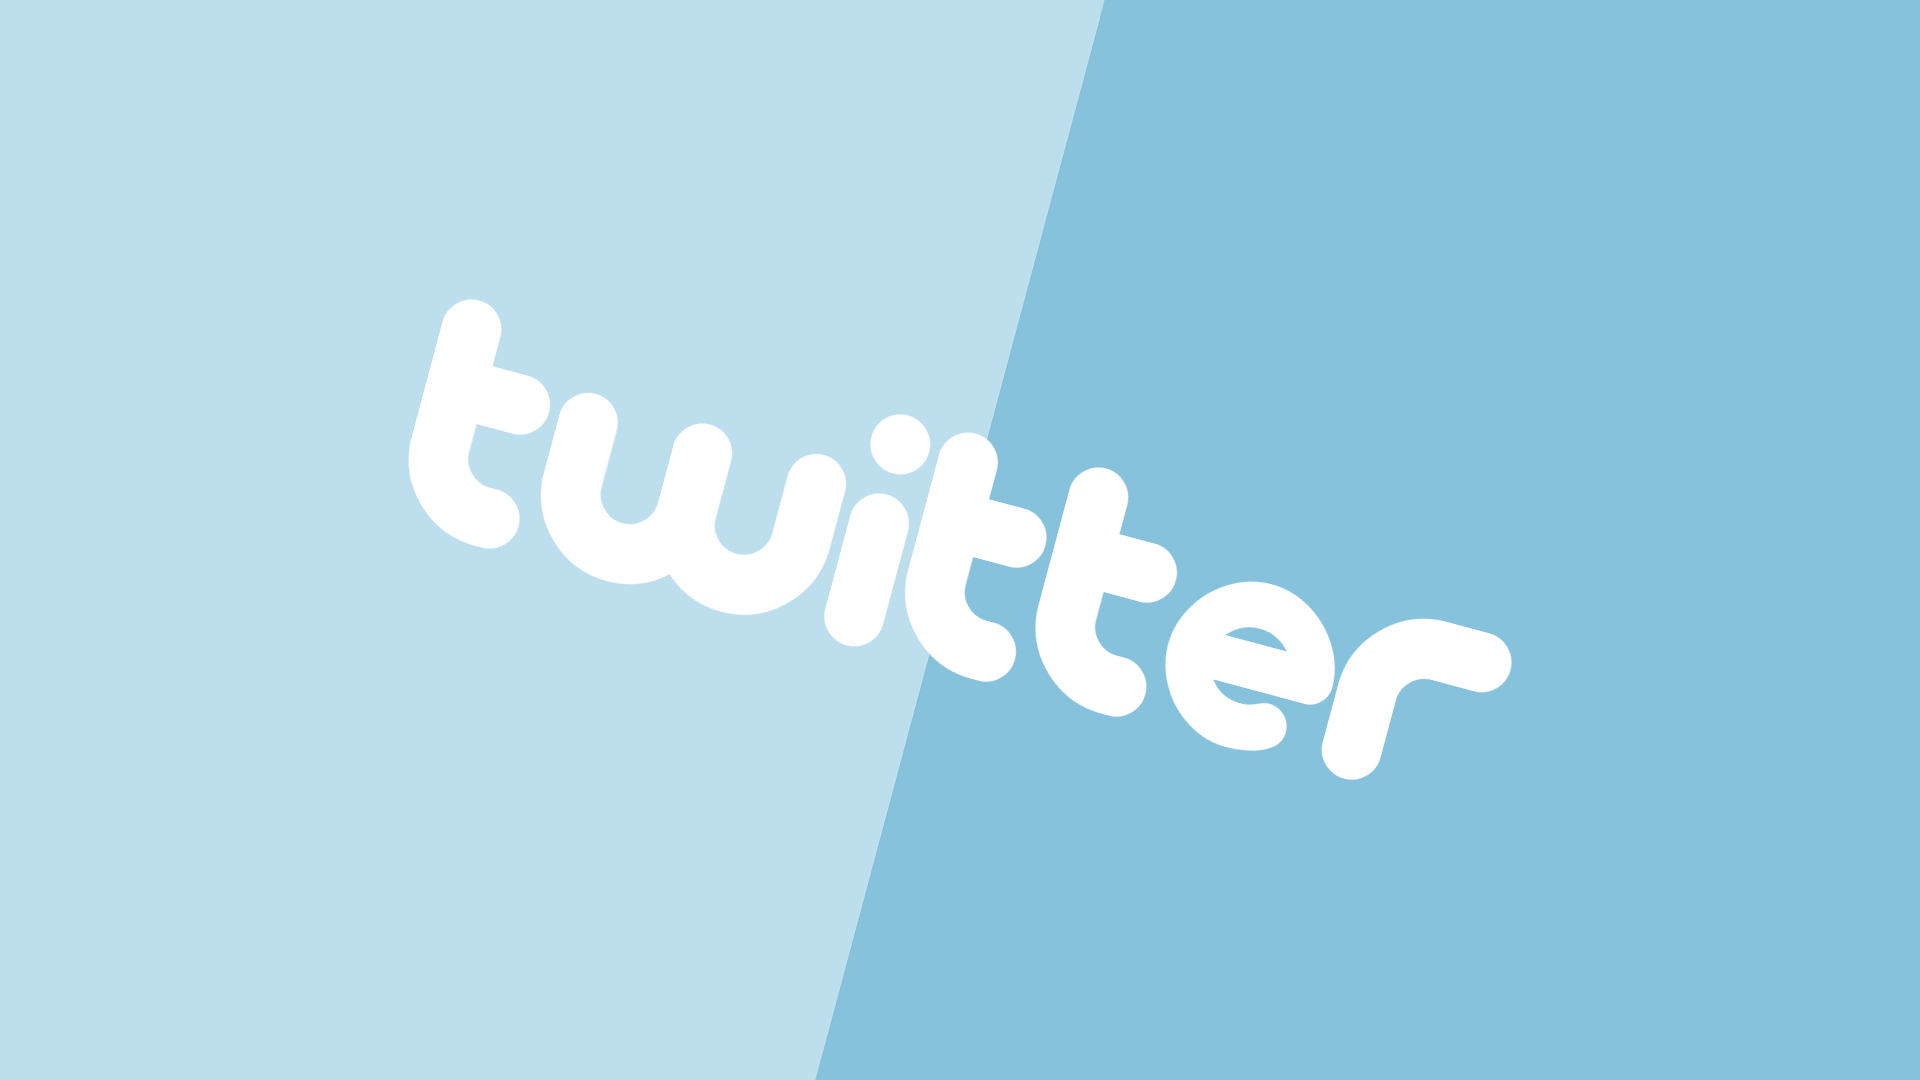 Akun Twitter Yang Wajib Di Follow. 10 Akun Berita Yang Wajib Anda Follow di Twitter